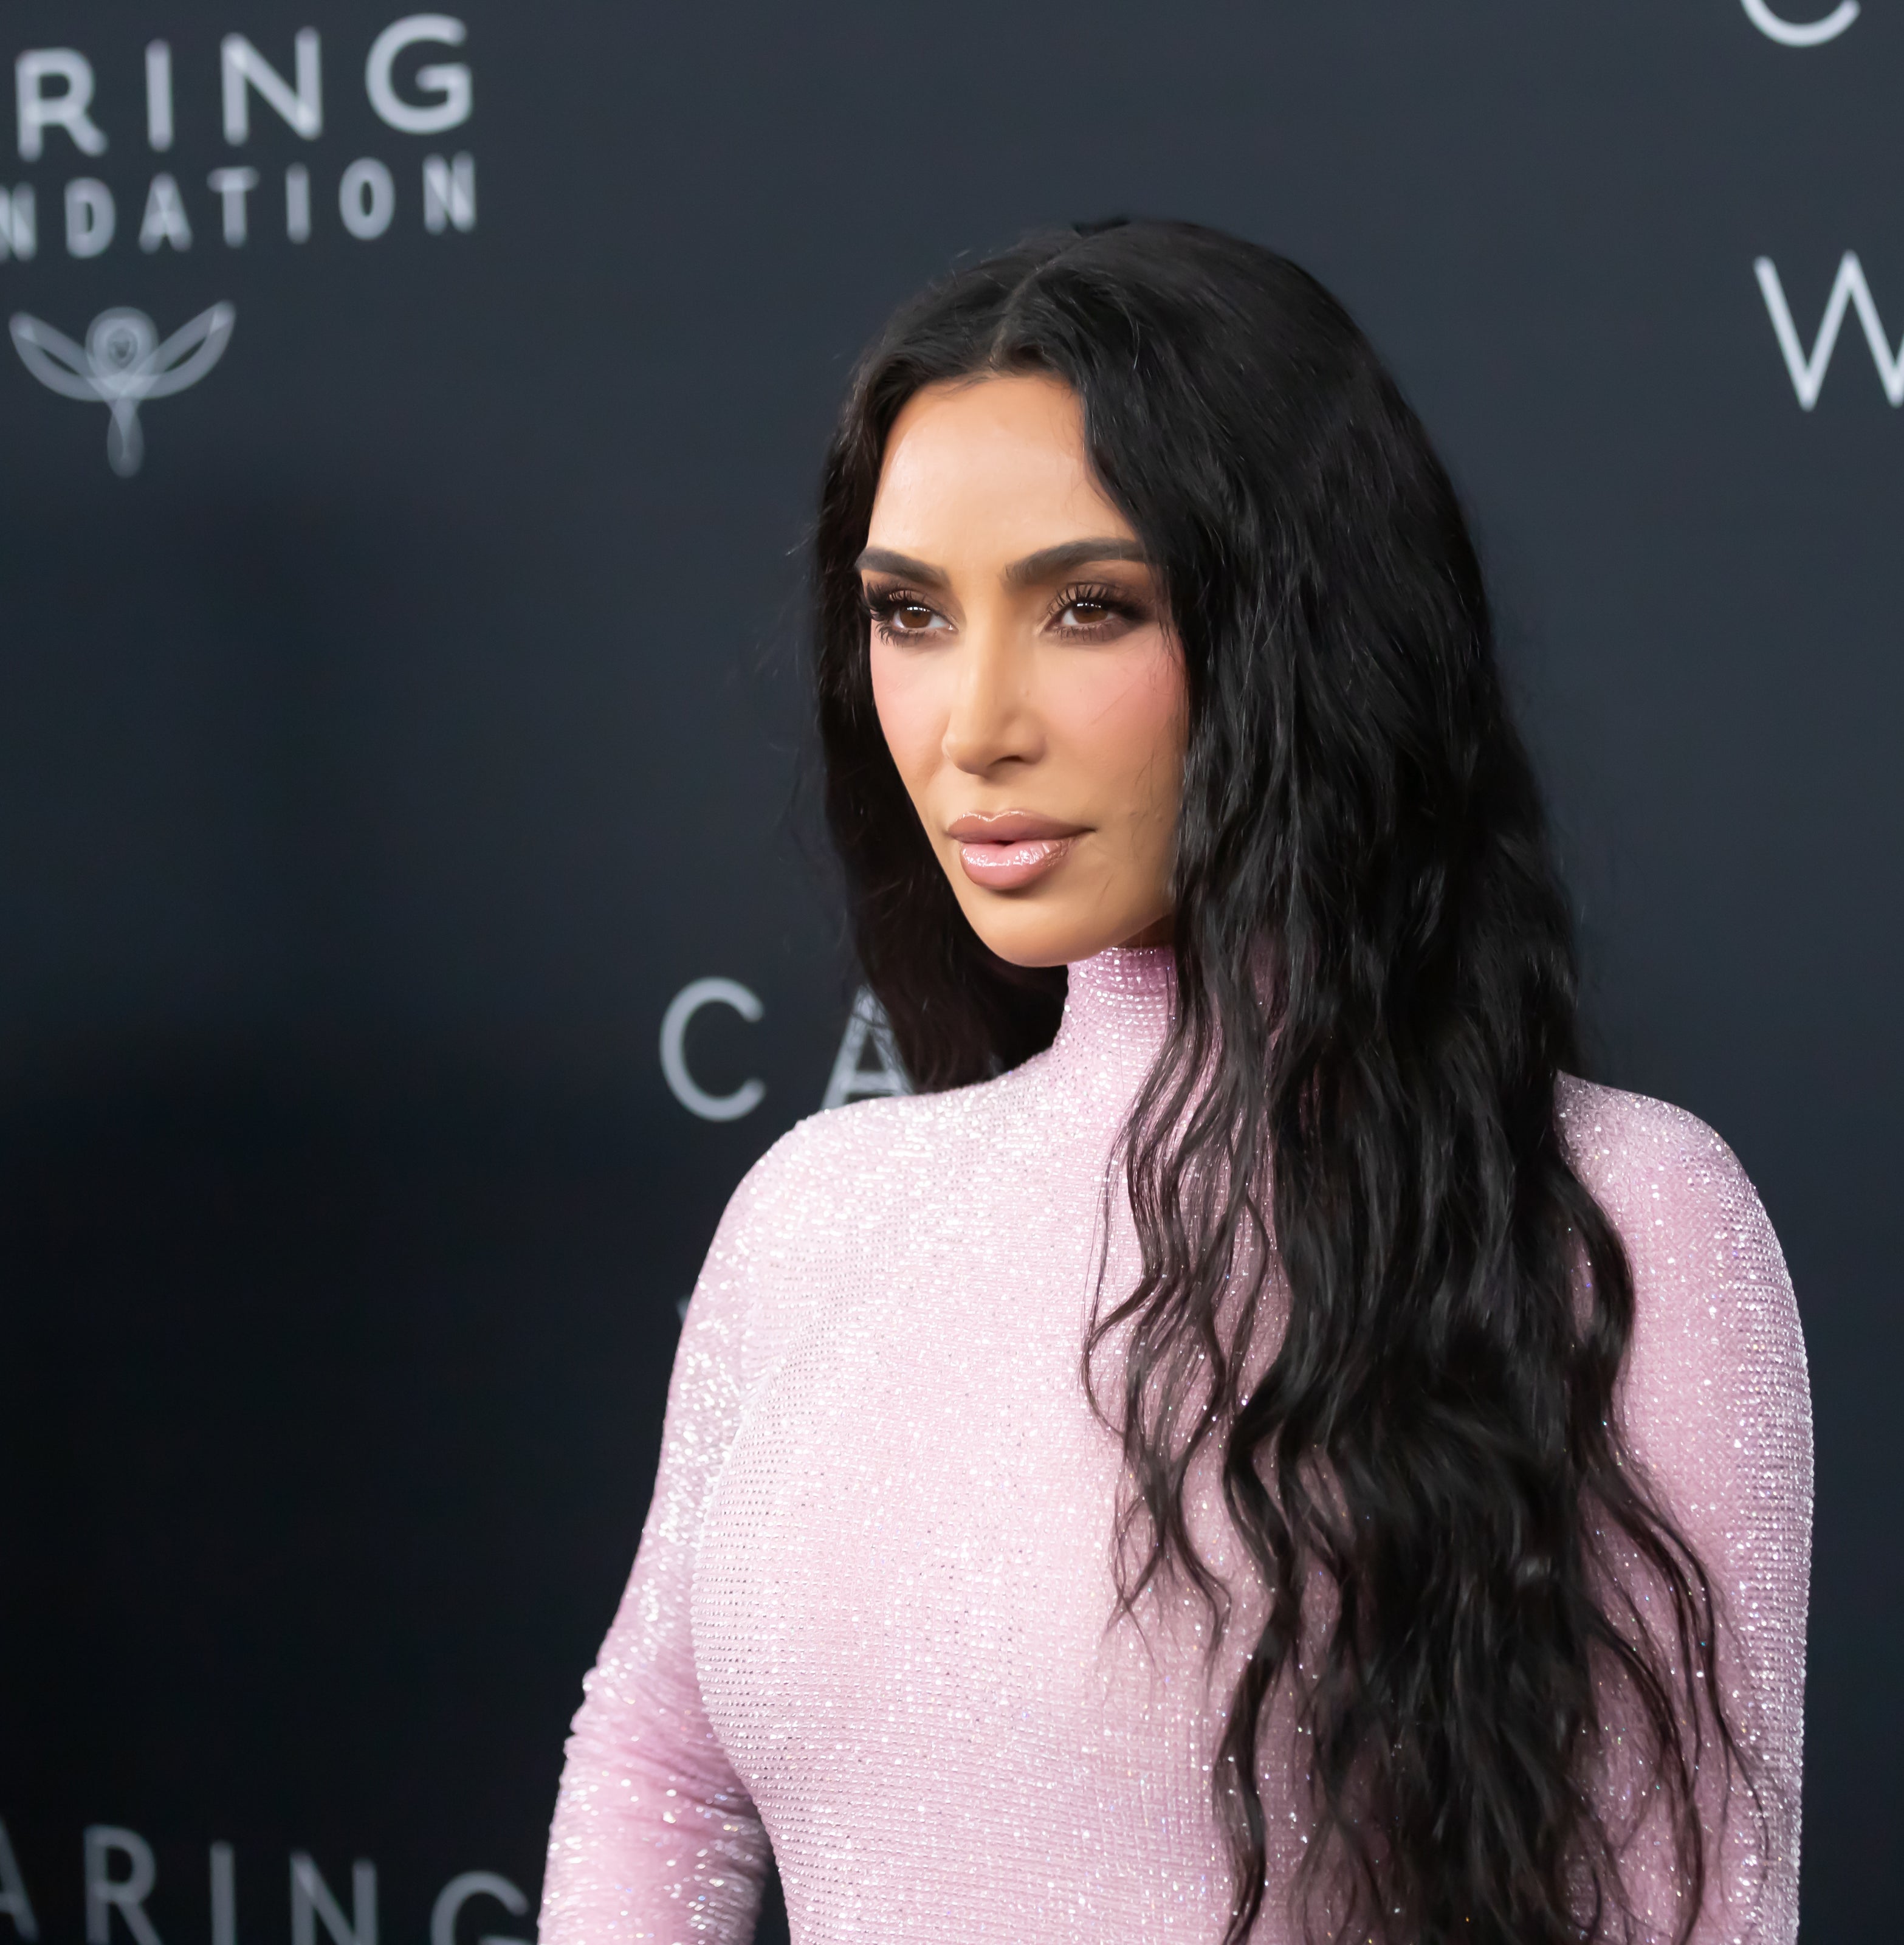 Kim Kardashian Says Yes To The Balenciaga Feather Boa